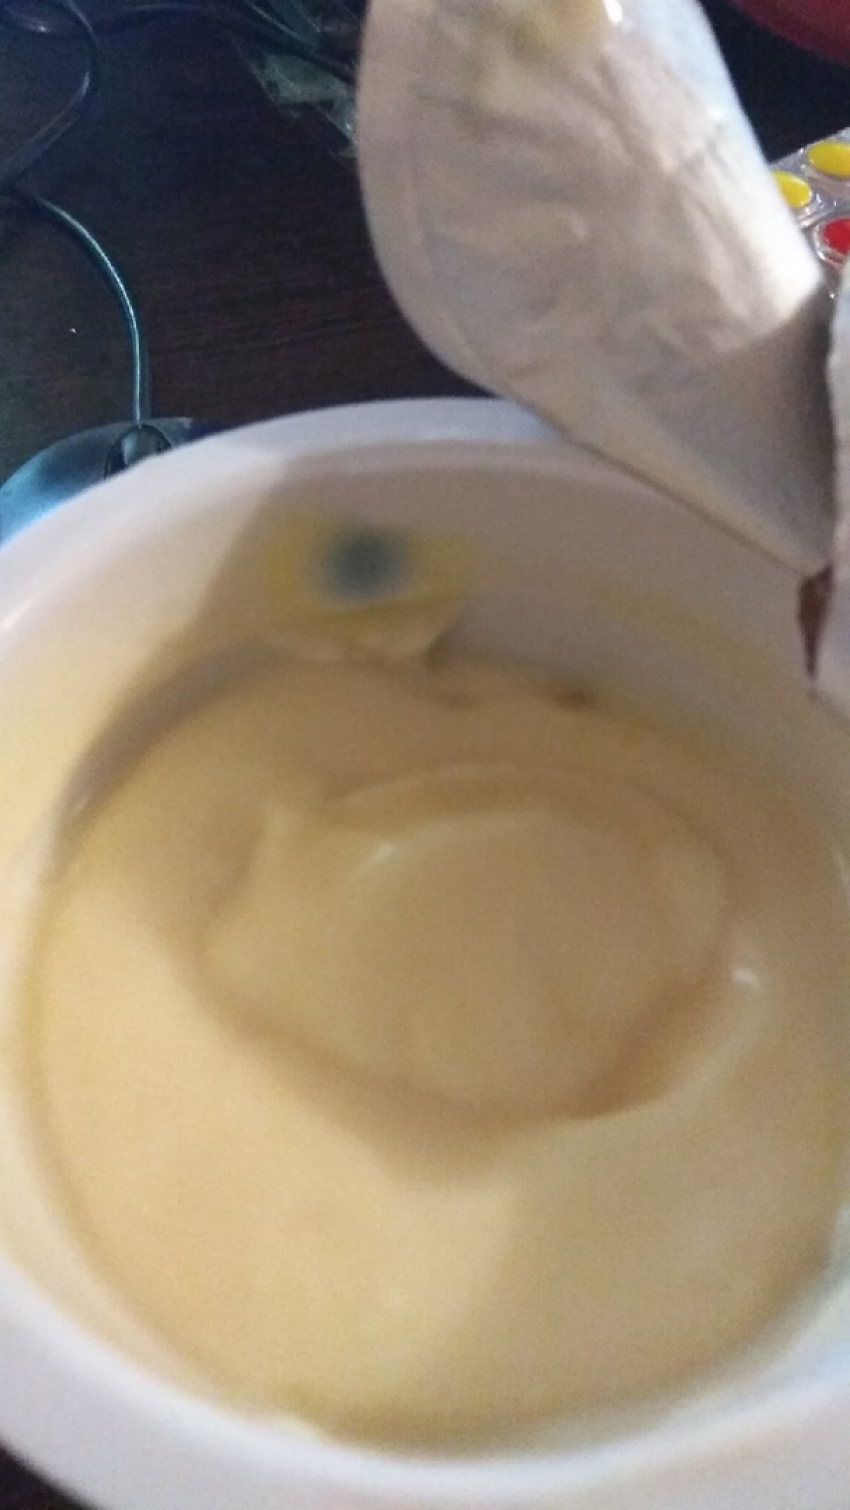 Камышанин выложил в соцсетях йогурт с «сюрпризом"